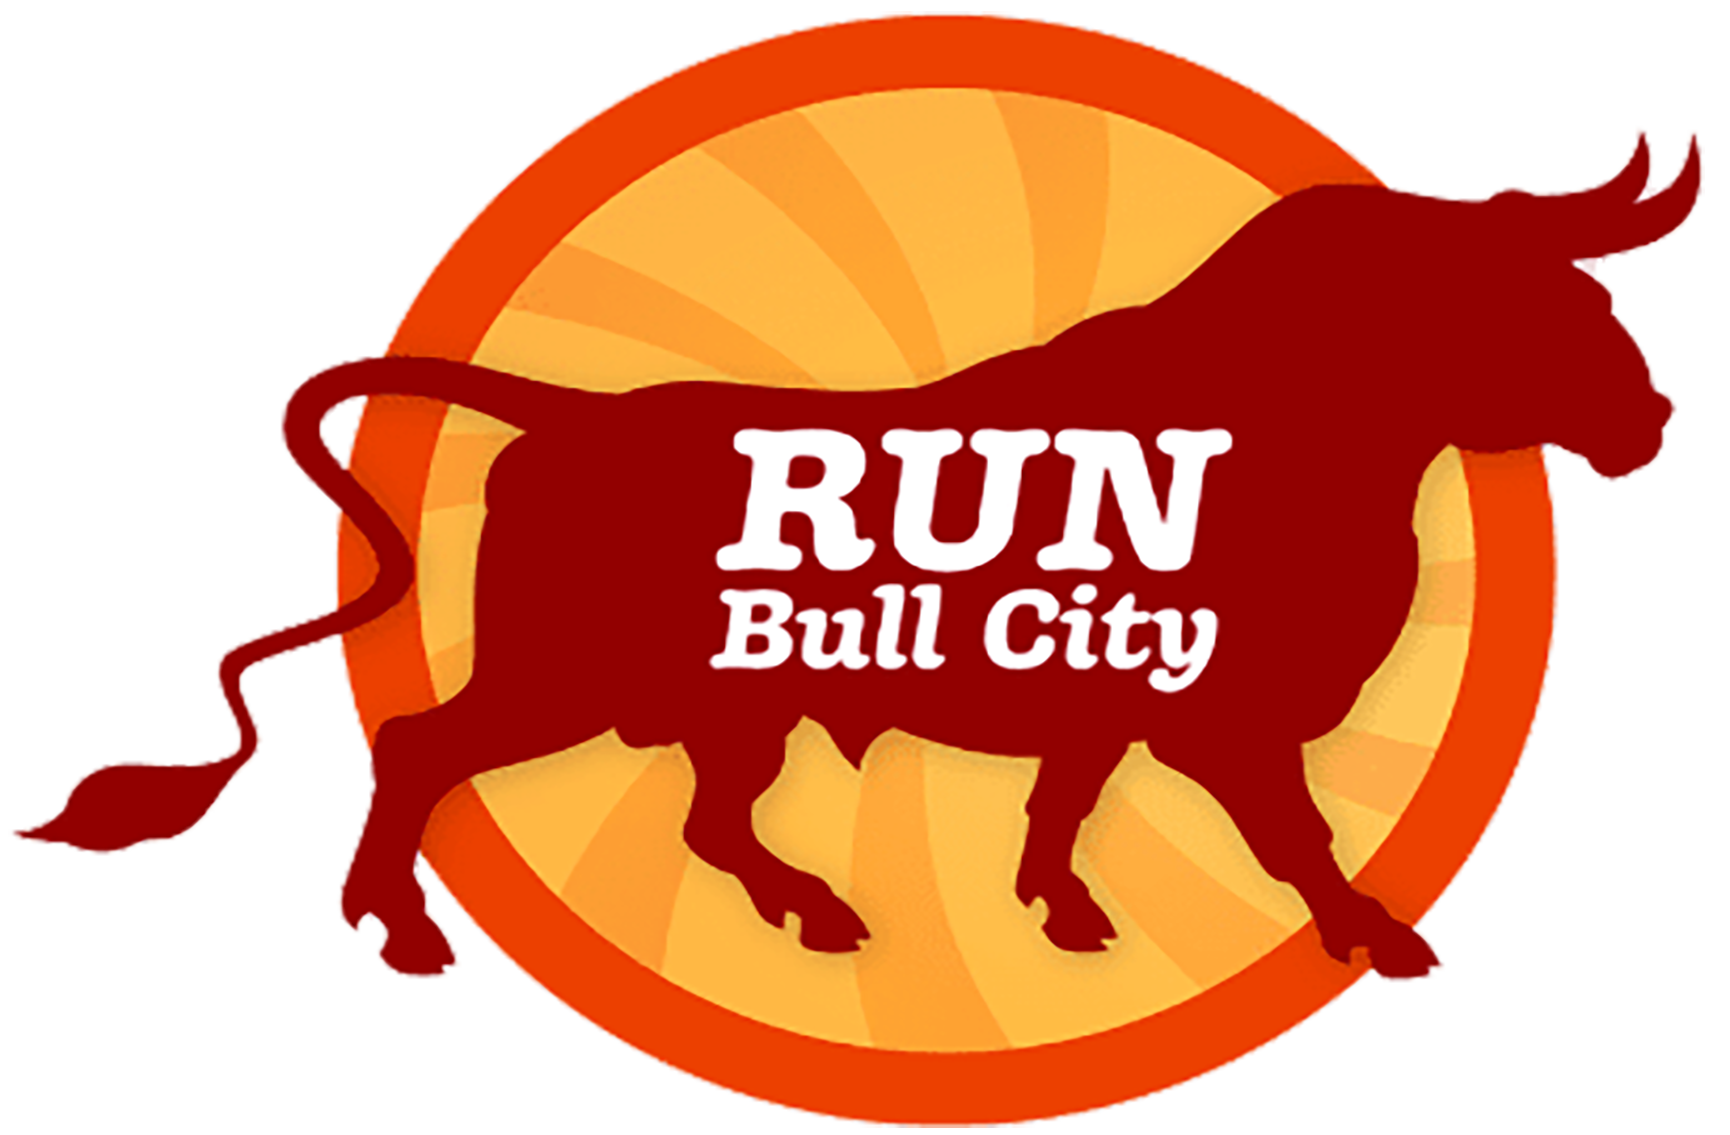 Daka at Bull City Run